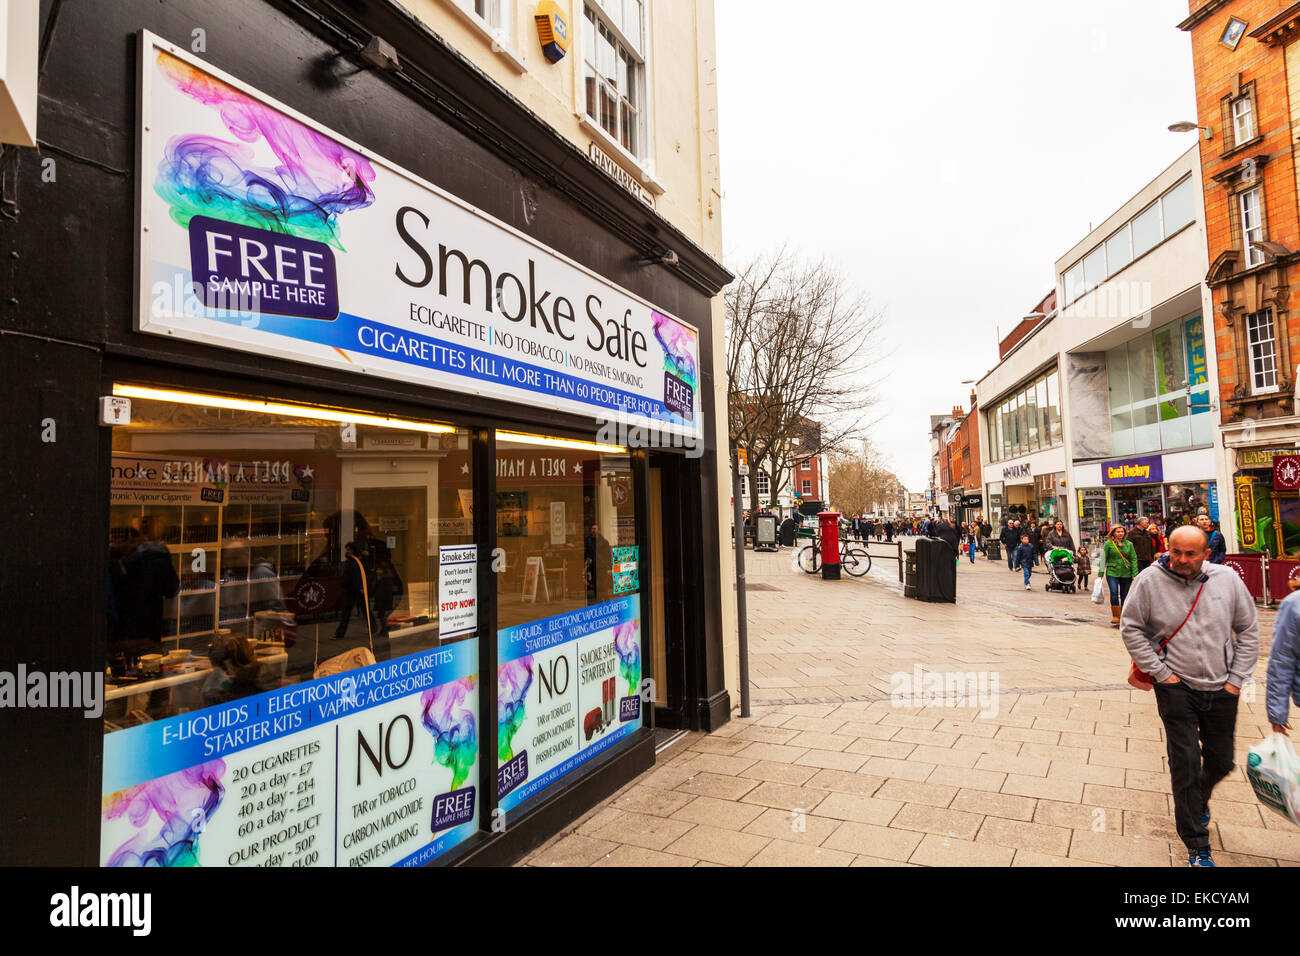 Les cigarettes électroniques e-liquide vapeur portables vaping e-cig vape vapingshop store front sign Norwich Norfolk Angleterre Royaume-uni Banque D'Images